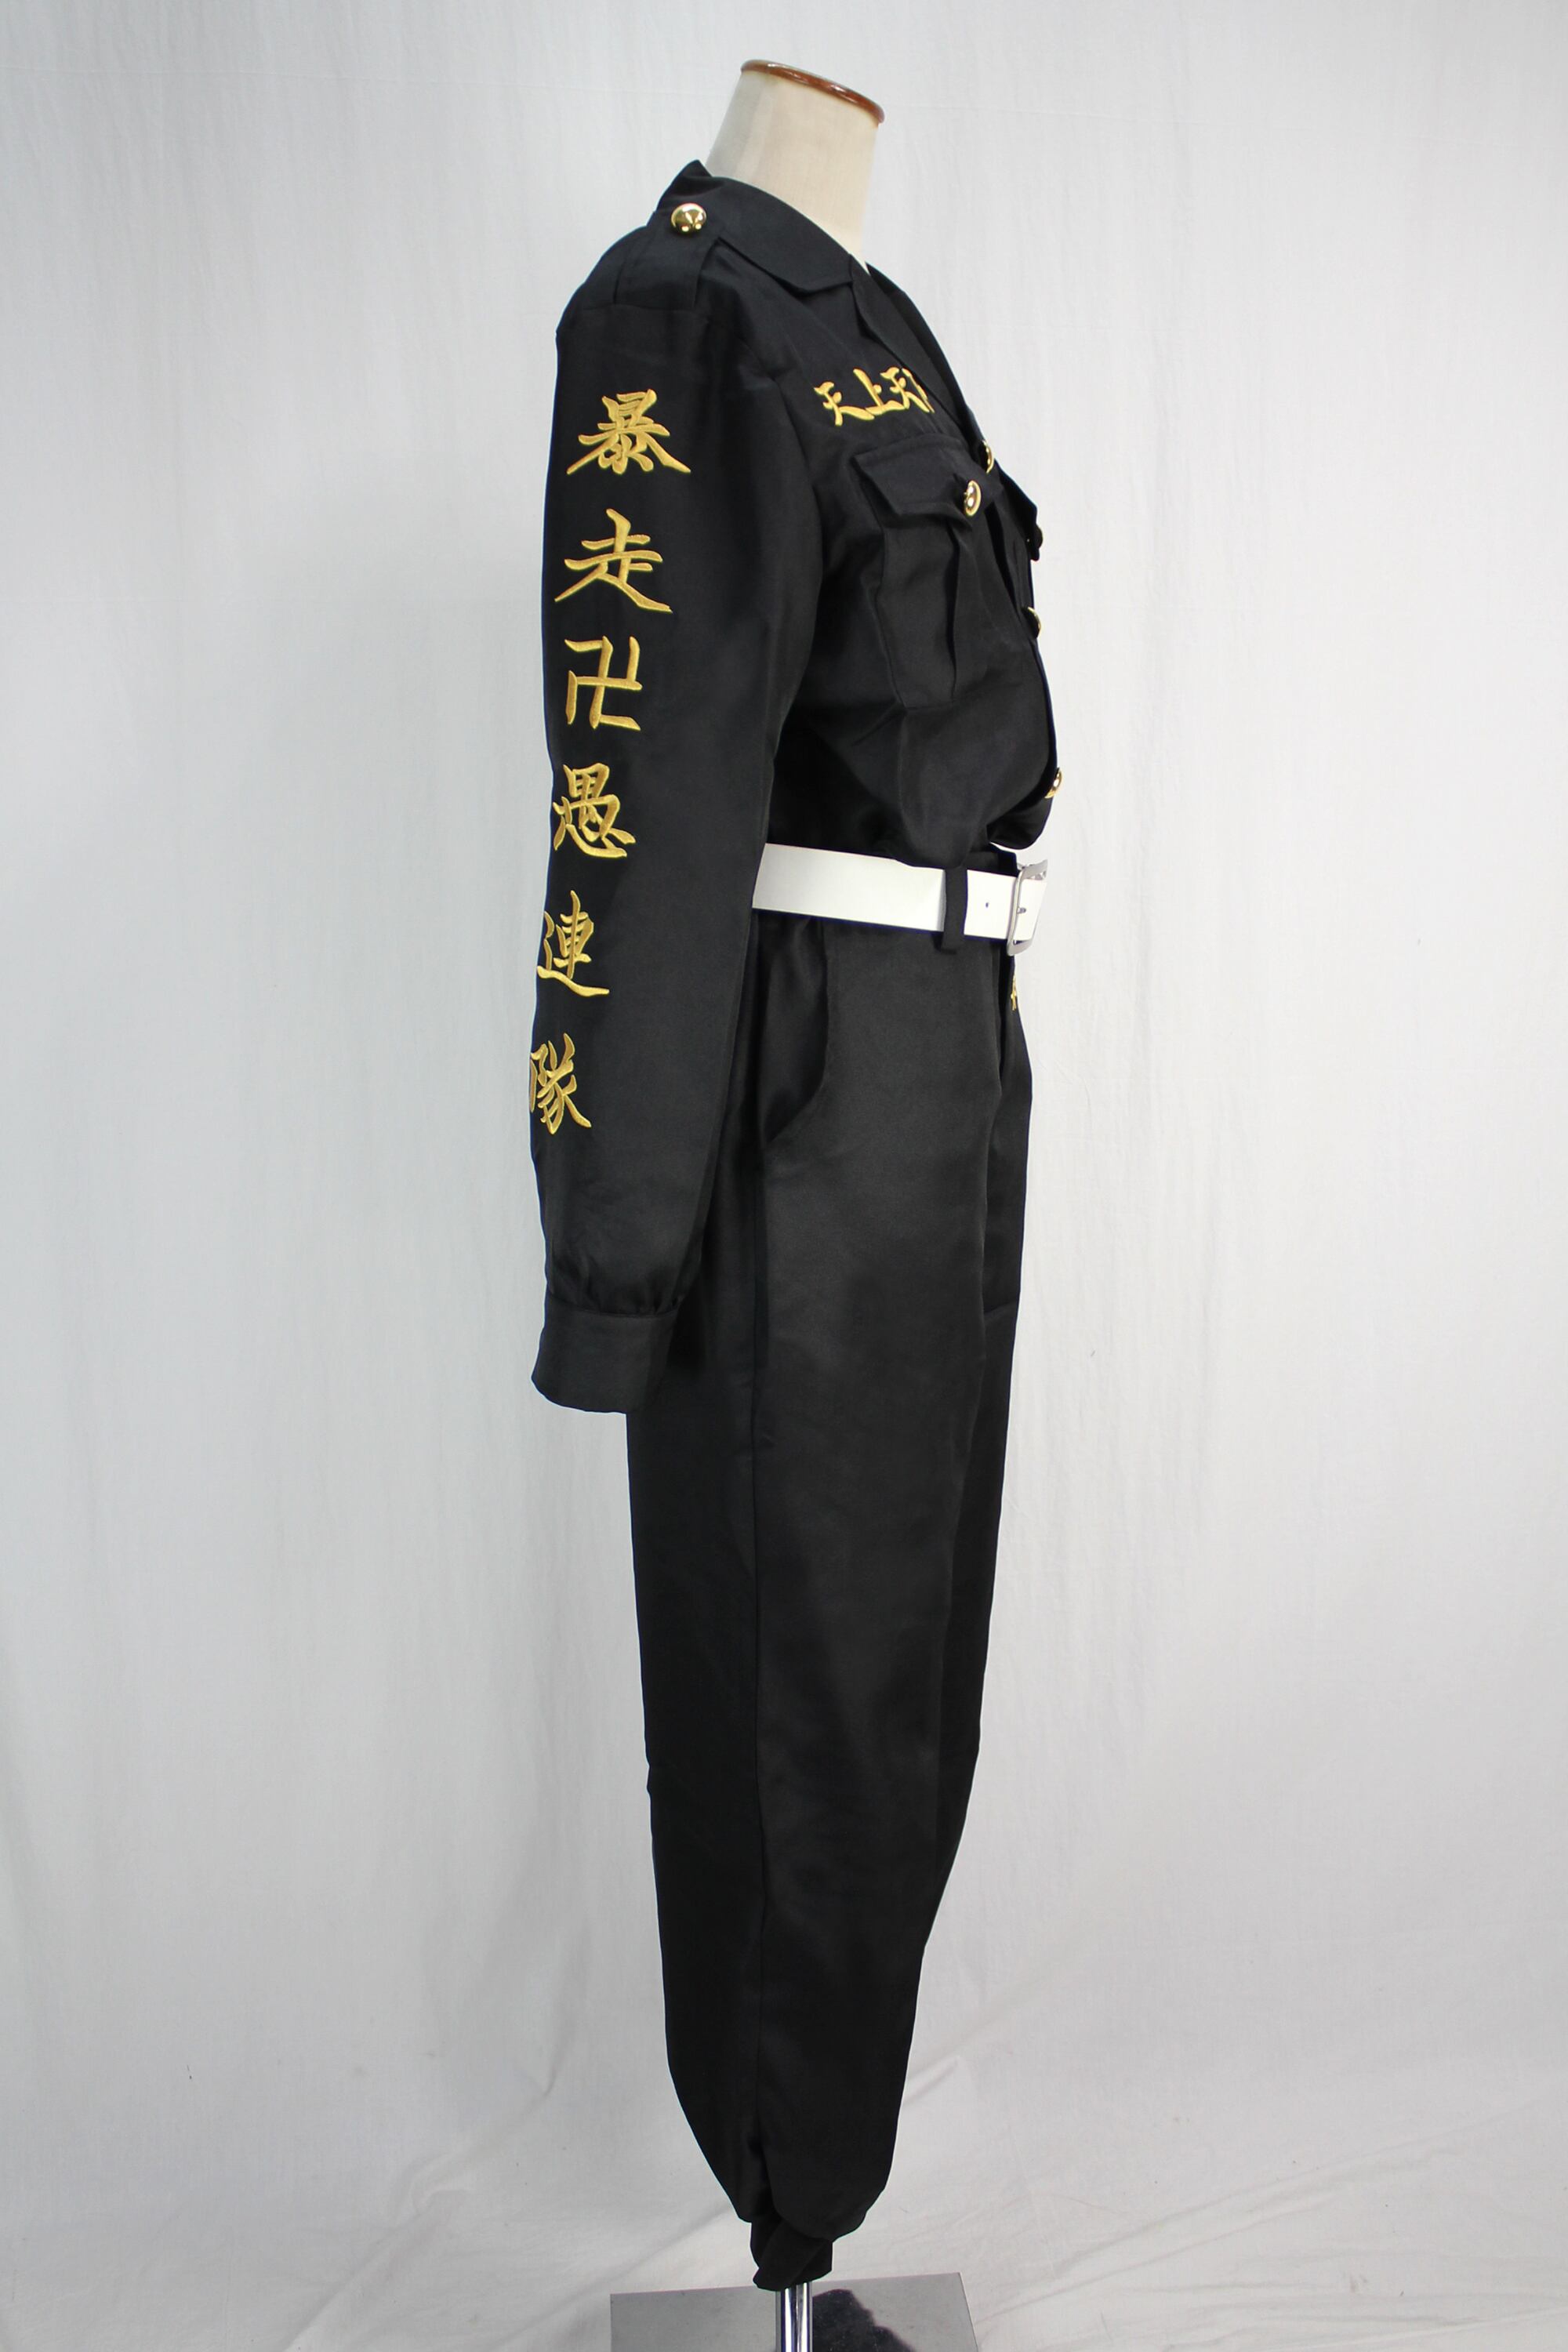 魅力的な 正規品 東京卍會結成記念セット 公式 特攻服 Lサイズ 